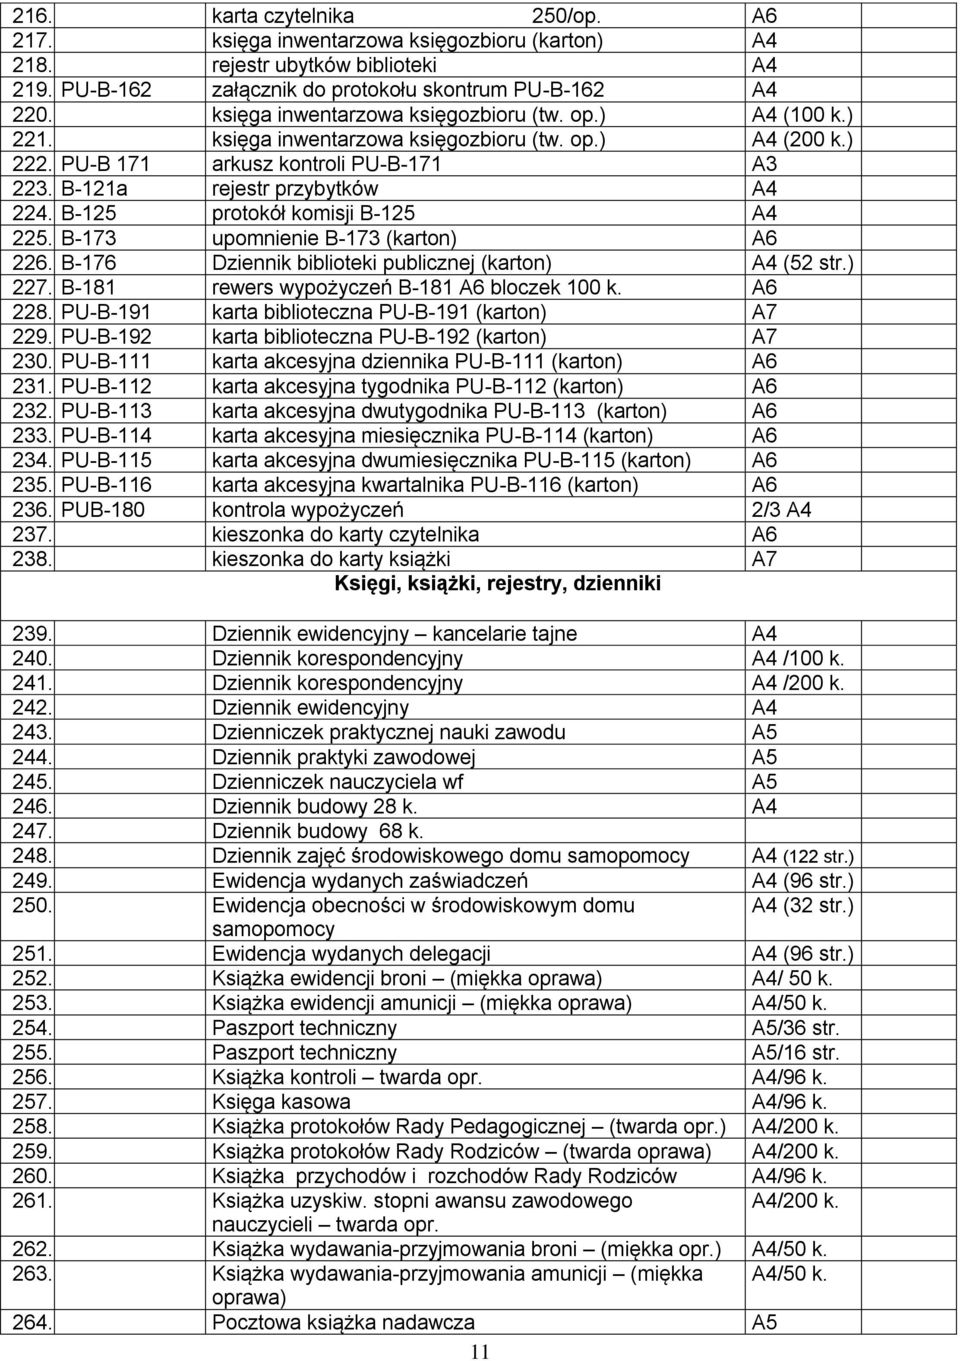 B-125 protokół komisji B-125 225. B-173 upomnienie B-173 (karton) A6 226. B-176 Dziennik biblioteki publicznej (karton) (52 str.) 227. B-181 rewers wypożyczeń B-181 A6 bloczek 100 k. A6 228.